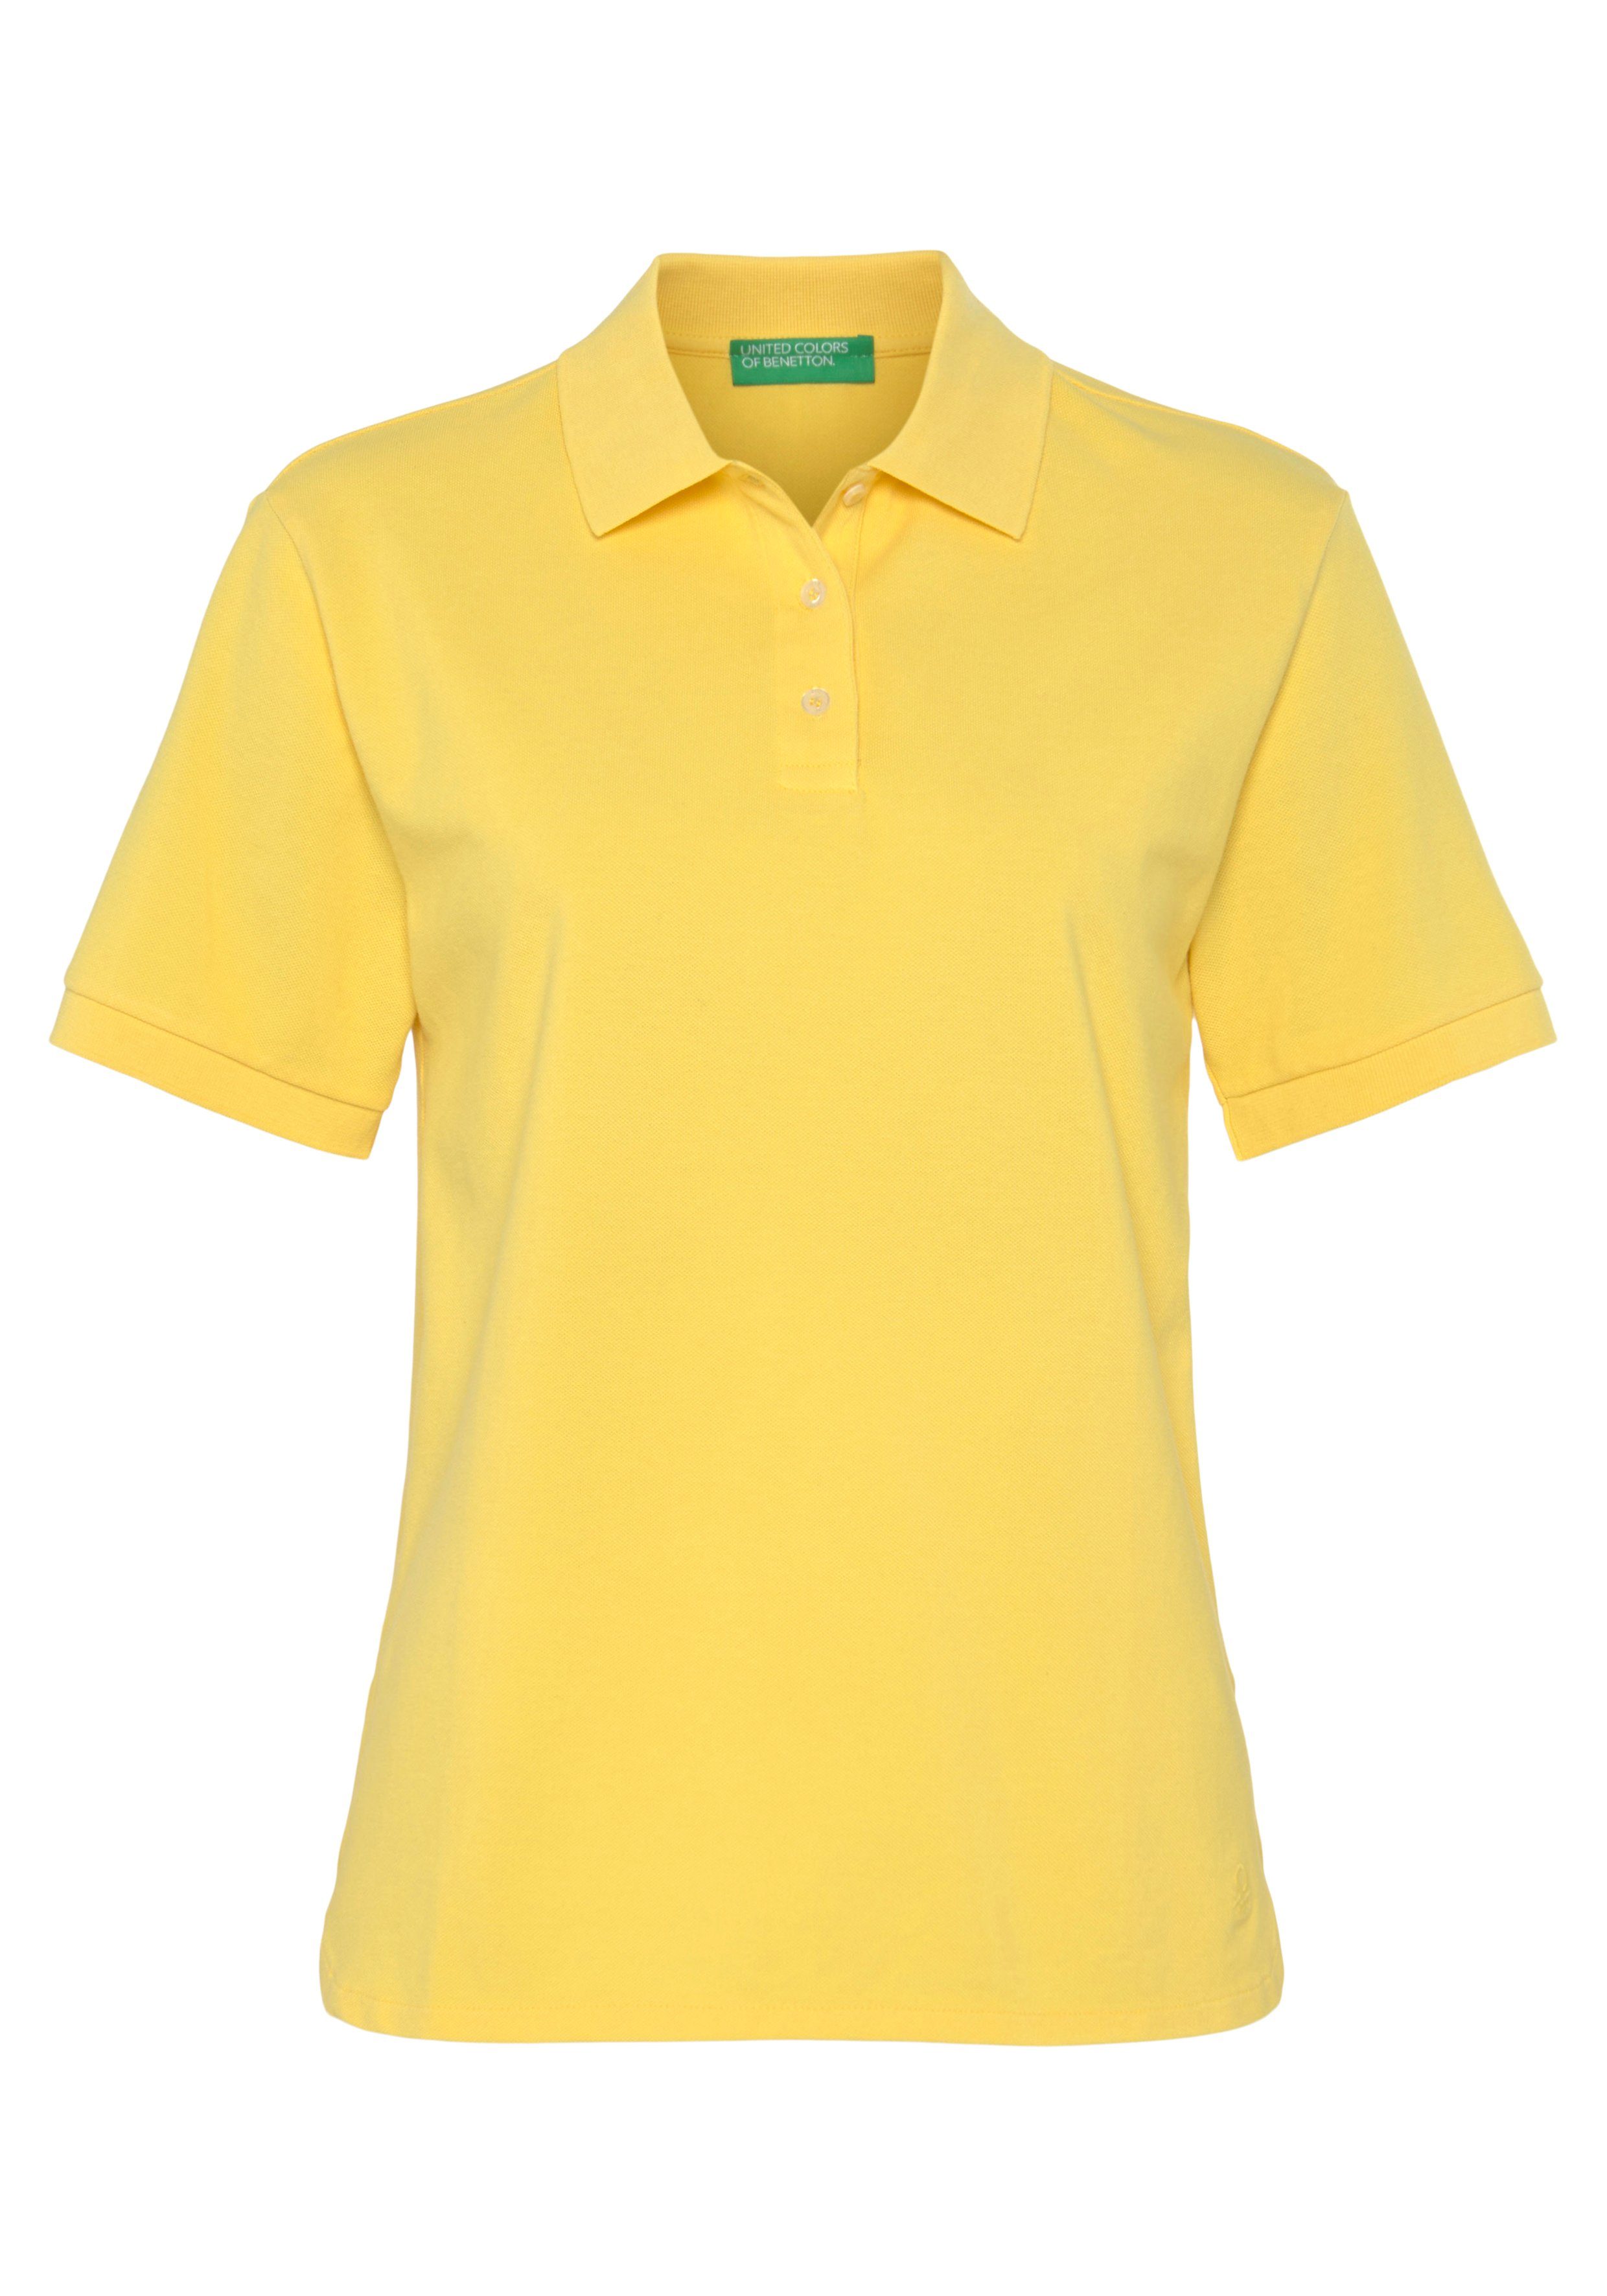 United Colors Benetton Knöpfen Poloshirt perlmuttfarbenen gelb mit of